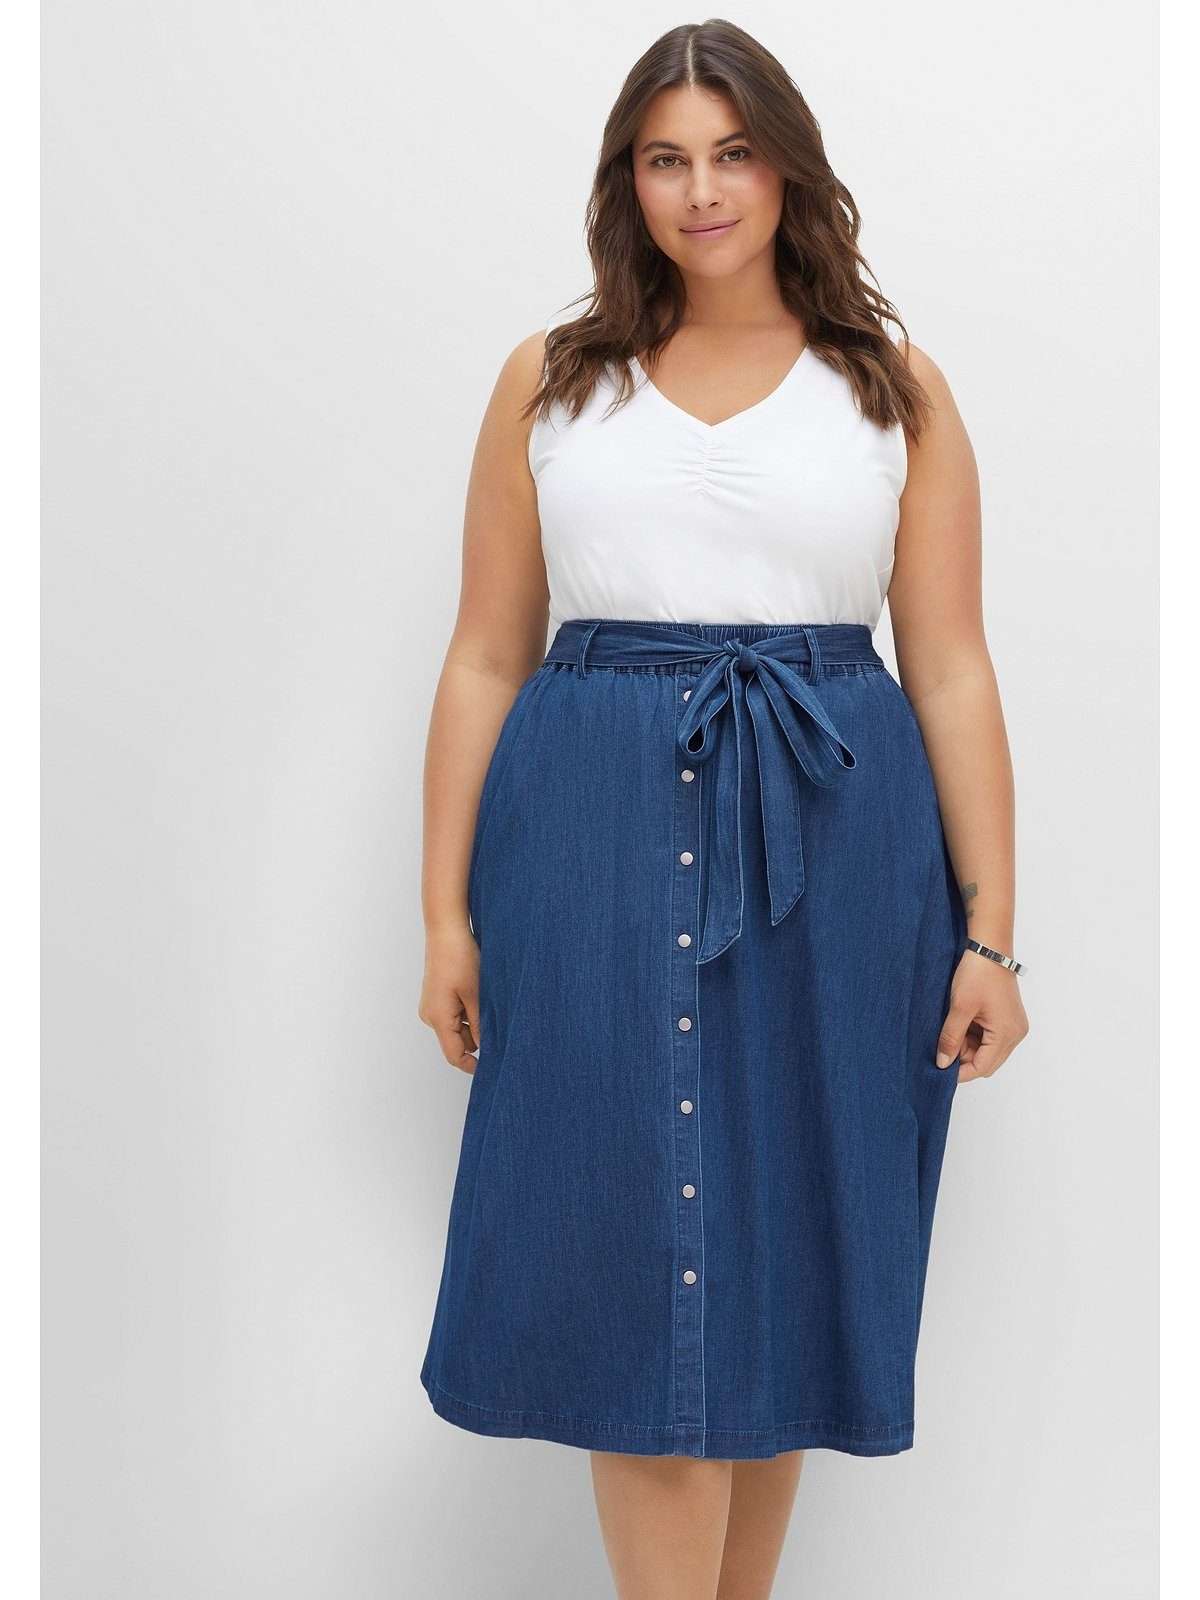 Джинсовая юбка больших размеров с поясом-комбинацией.